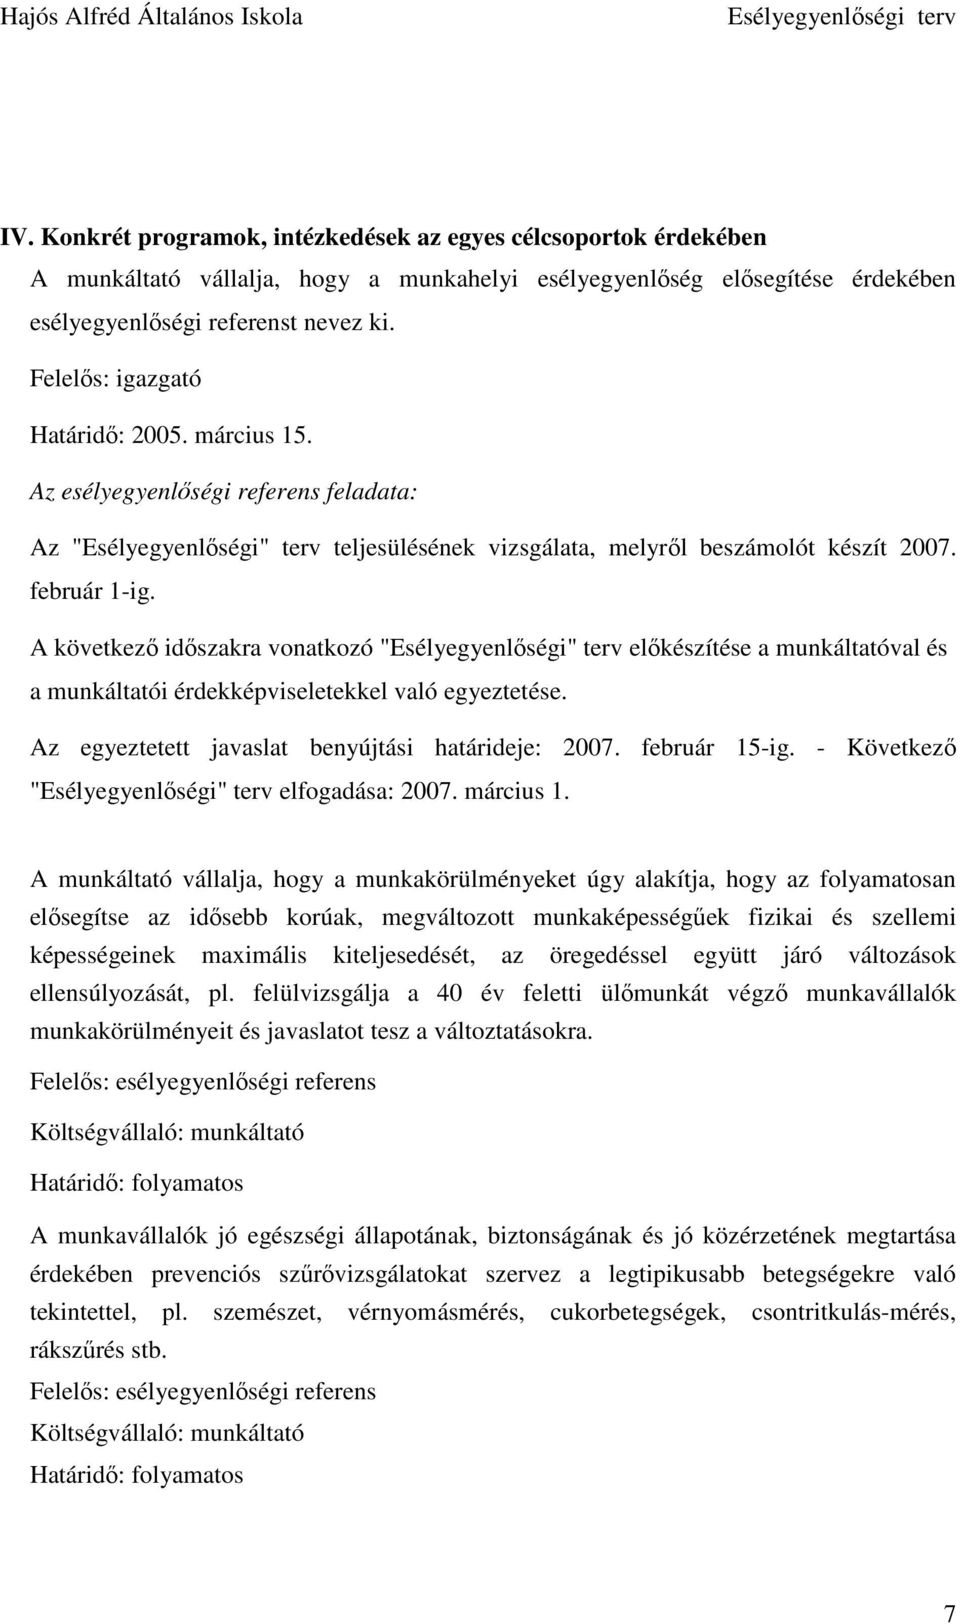 A következı idıszakra vonatkozó "Esélyegyenlıségi" terv elıkészítése a munkáltatóval és a munkáltatói érdekképviseletekkel való egyeztetése. Az egyeztetett javaslat benyújtási határideje: 2007.